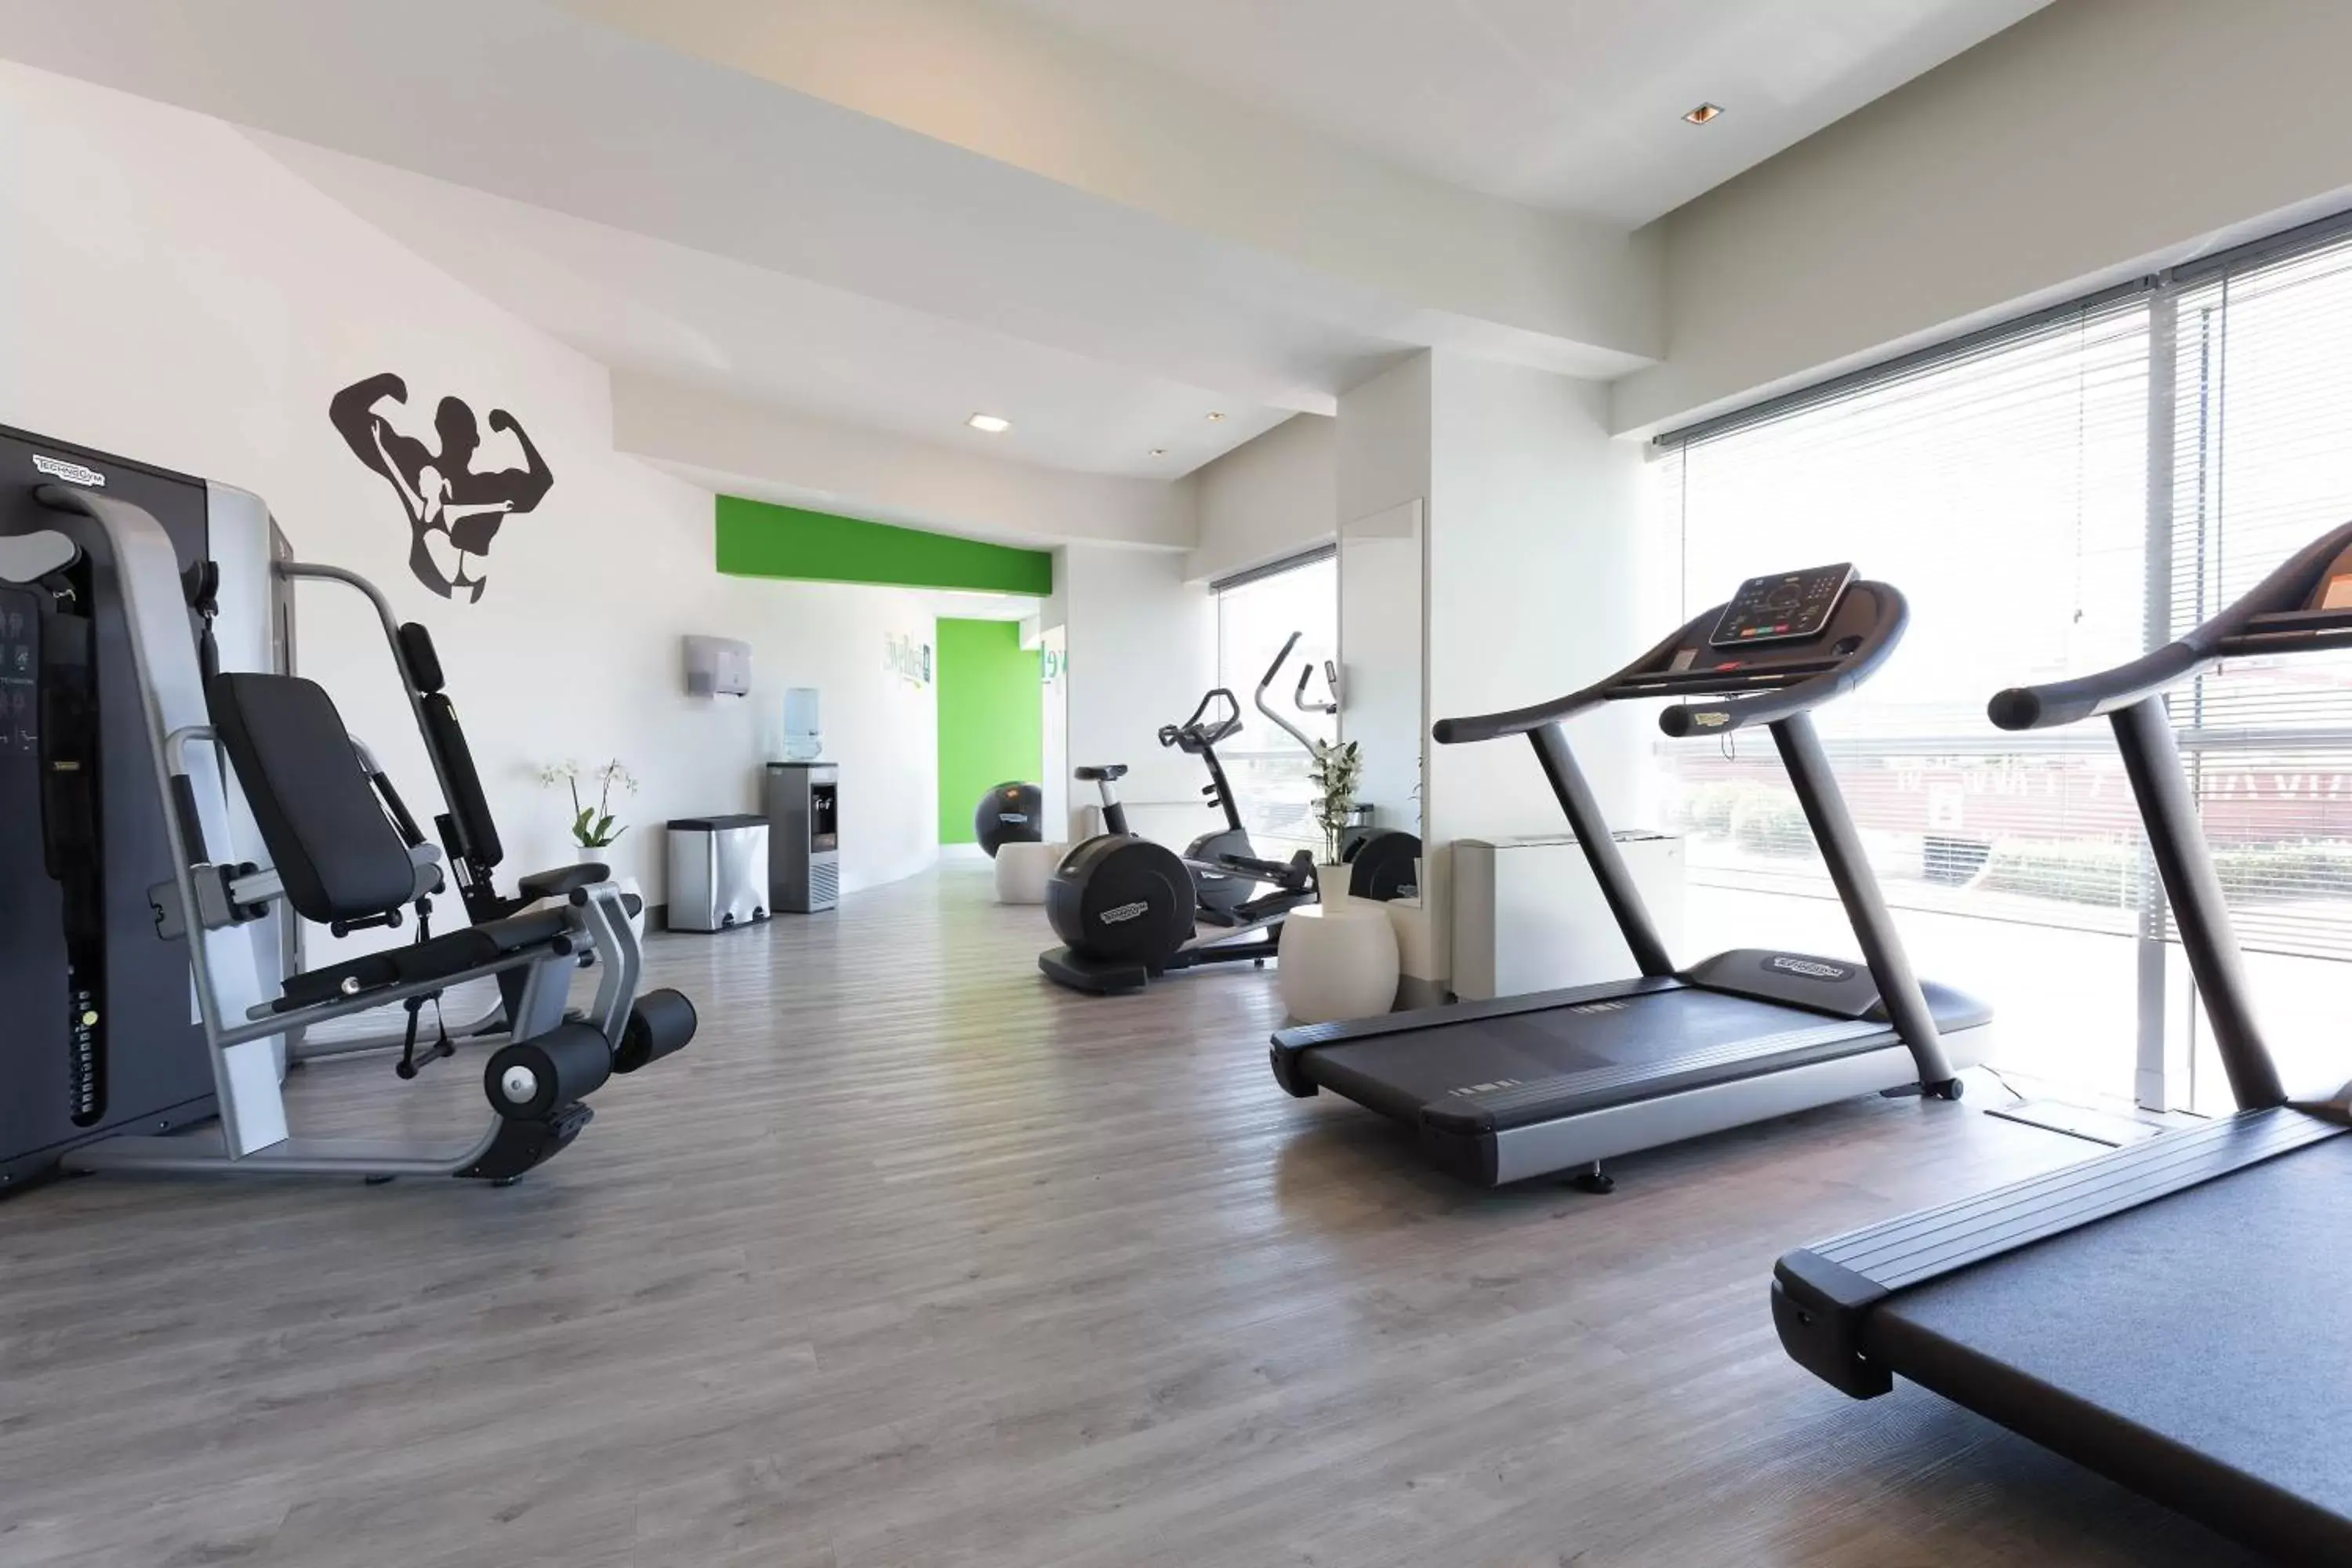 Fitness centre/facilities in Idea Hotel Roma Z3